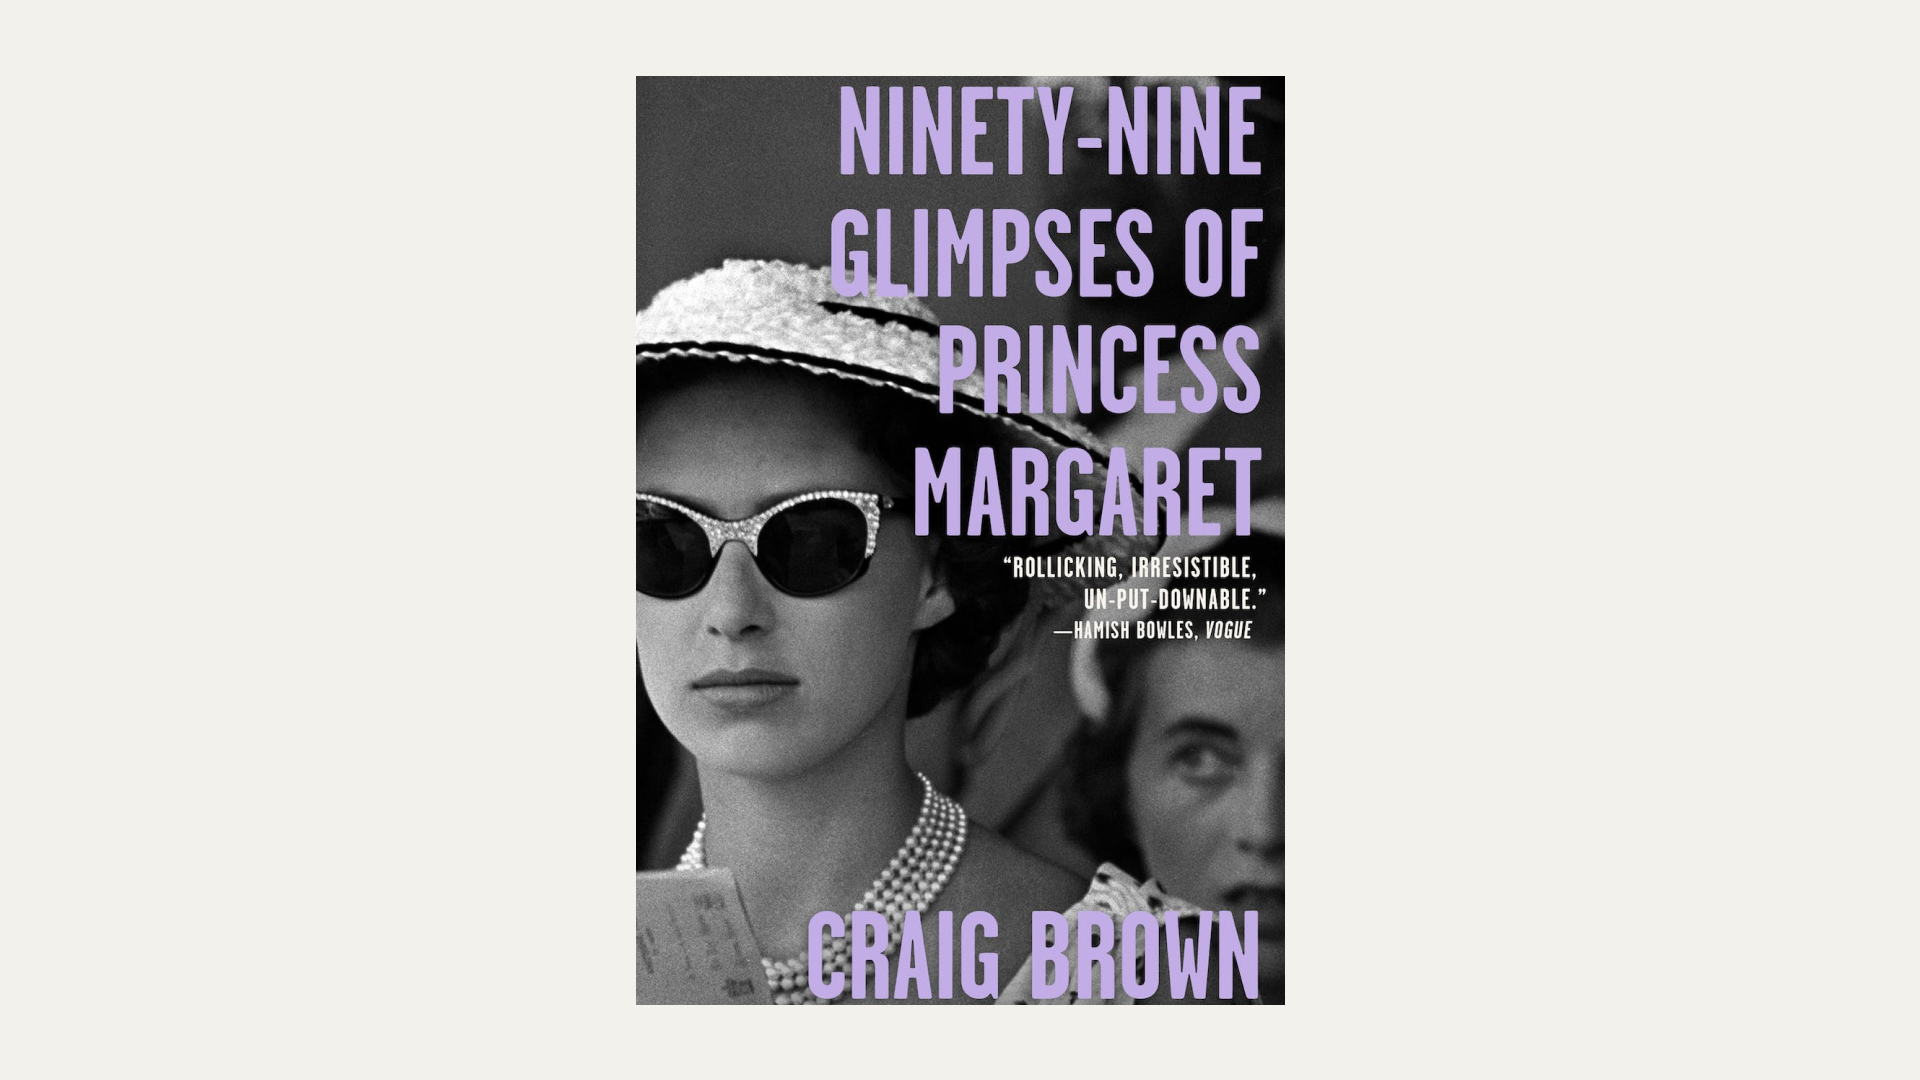 “Ninety-Nine Glimpses of Princess Margaret” by Craig Brown